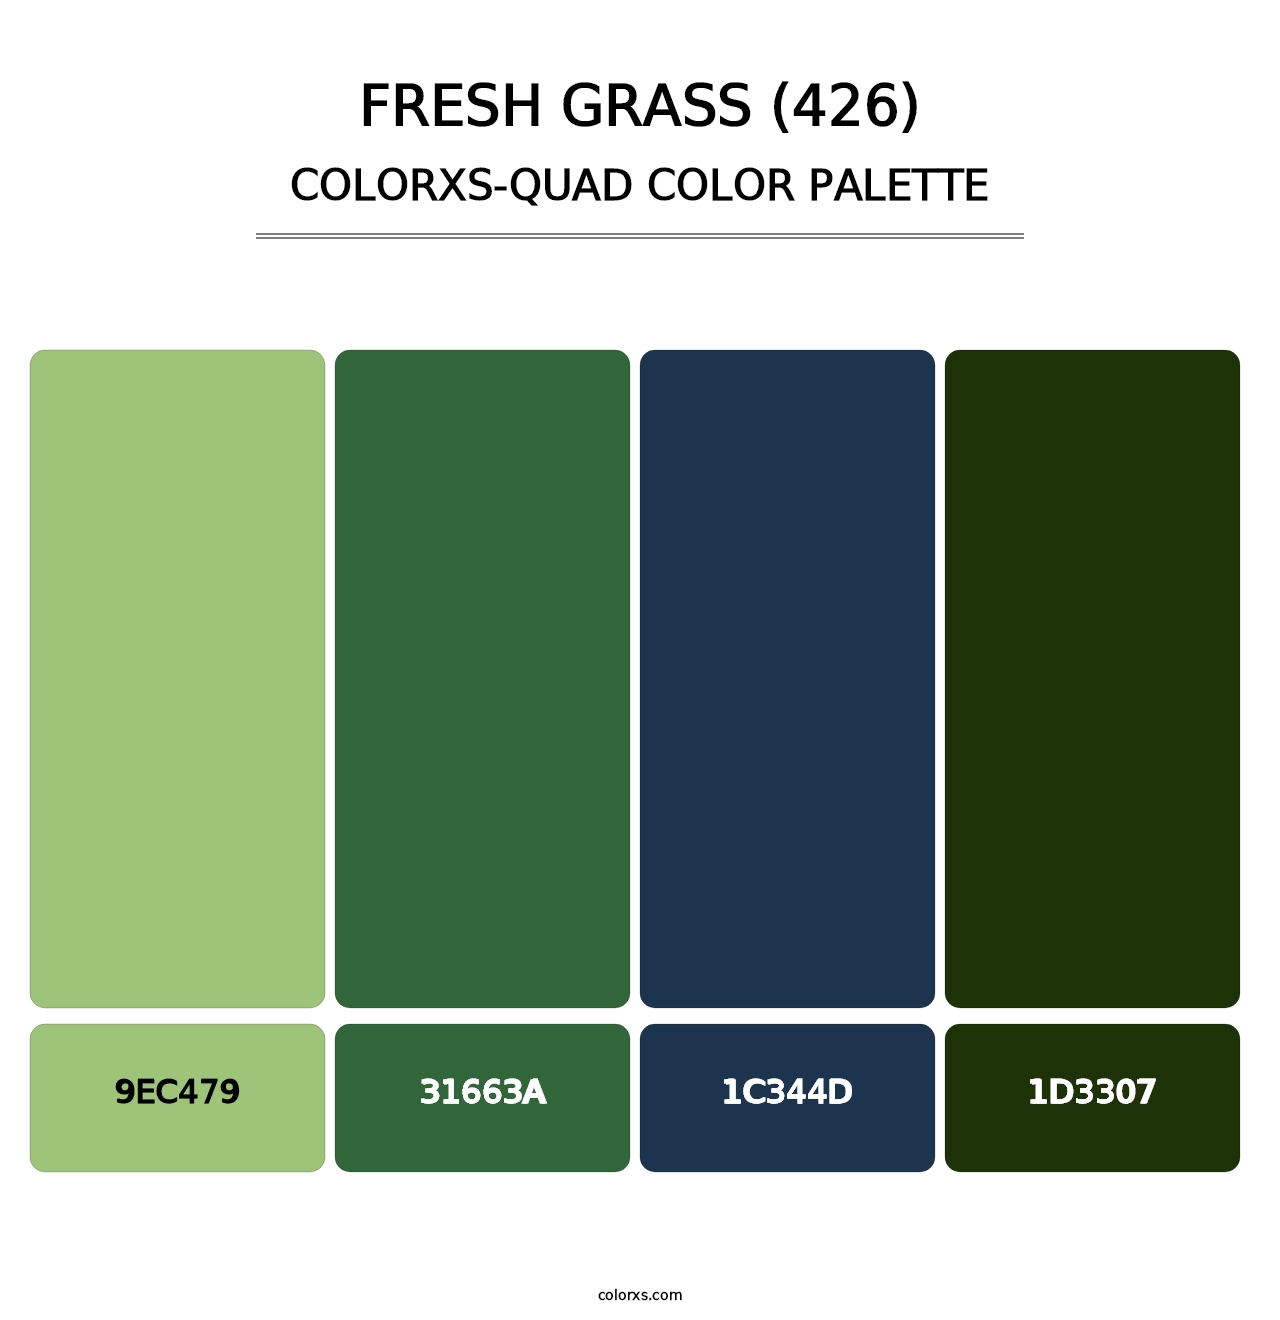 Fresh Grass (426) - Colorxs Quad Palette